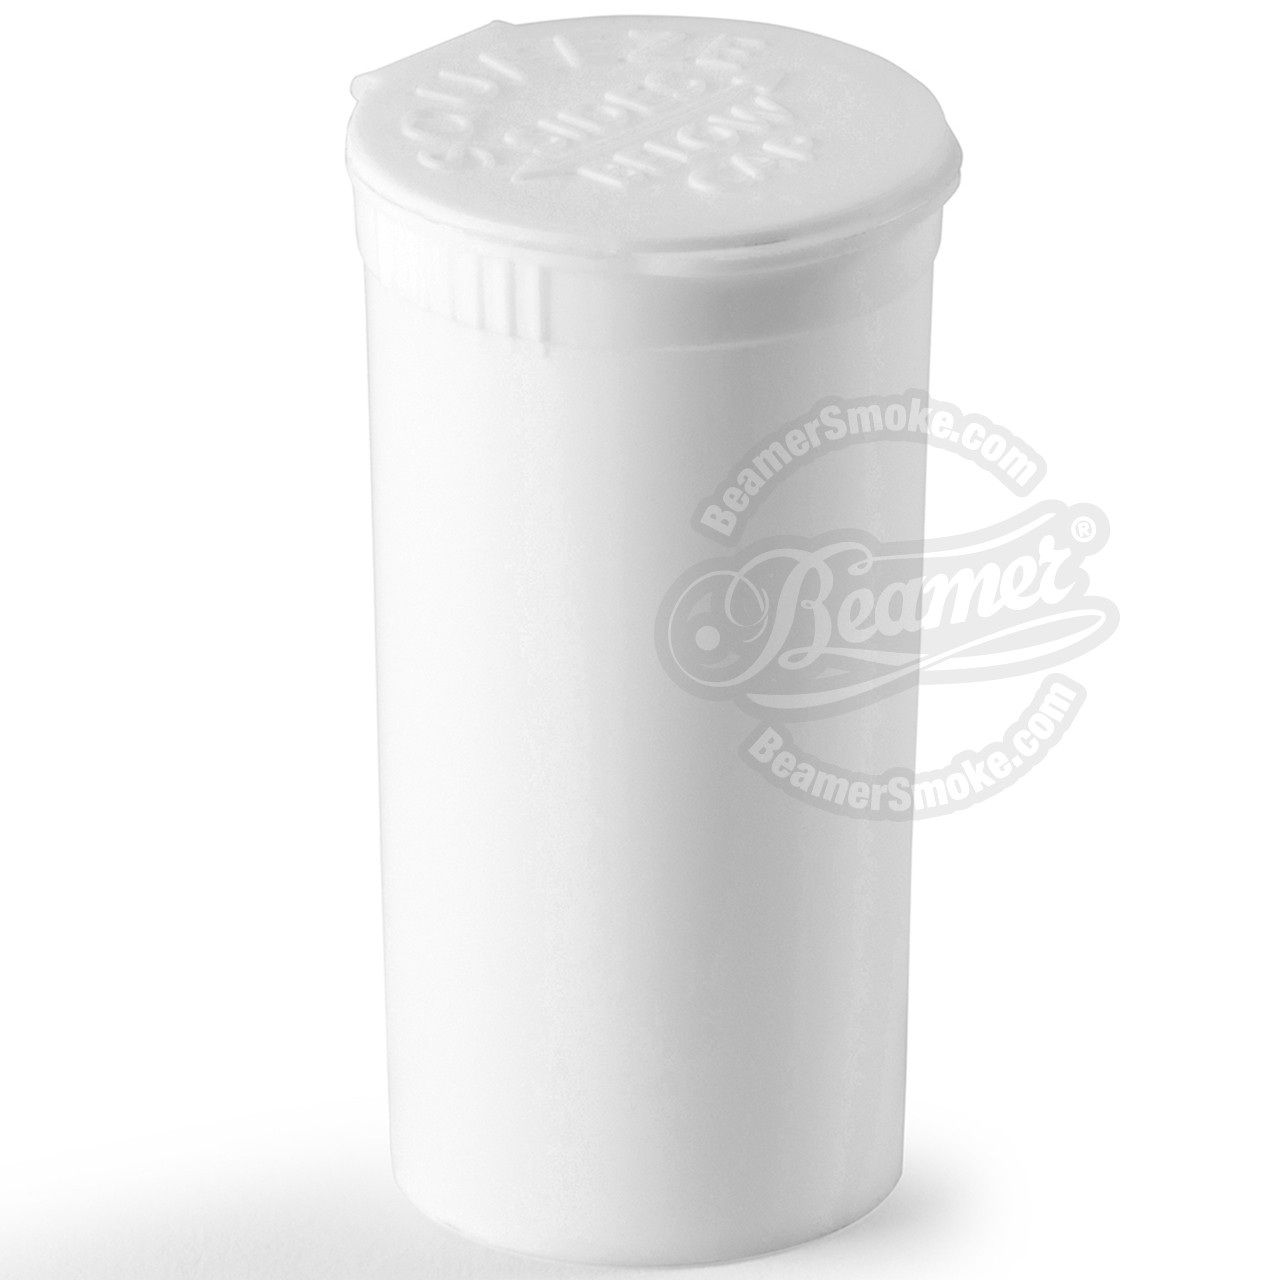 Beamer 13 Dram Pop Top Storage Jar - Beamer Smoke